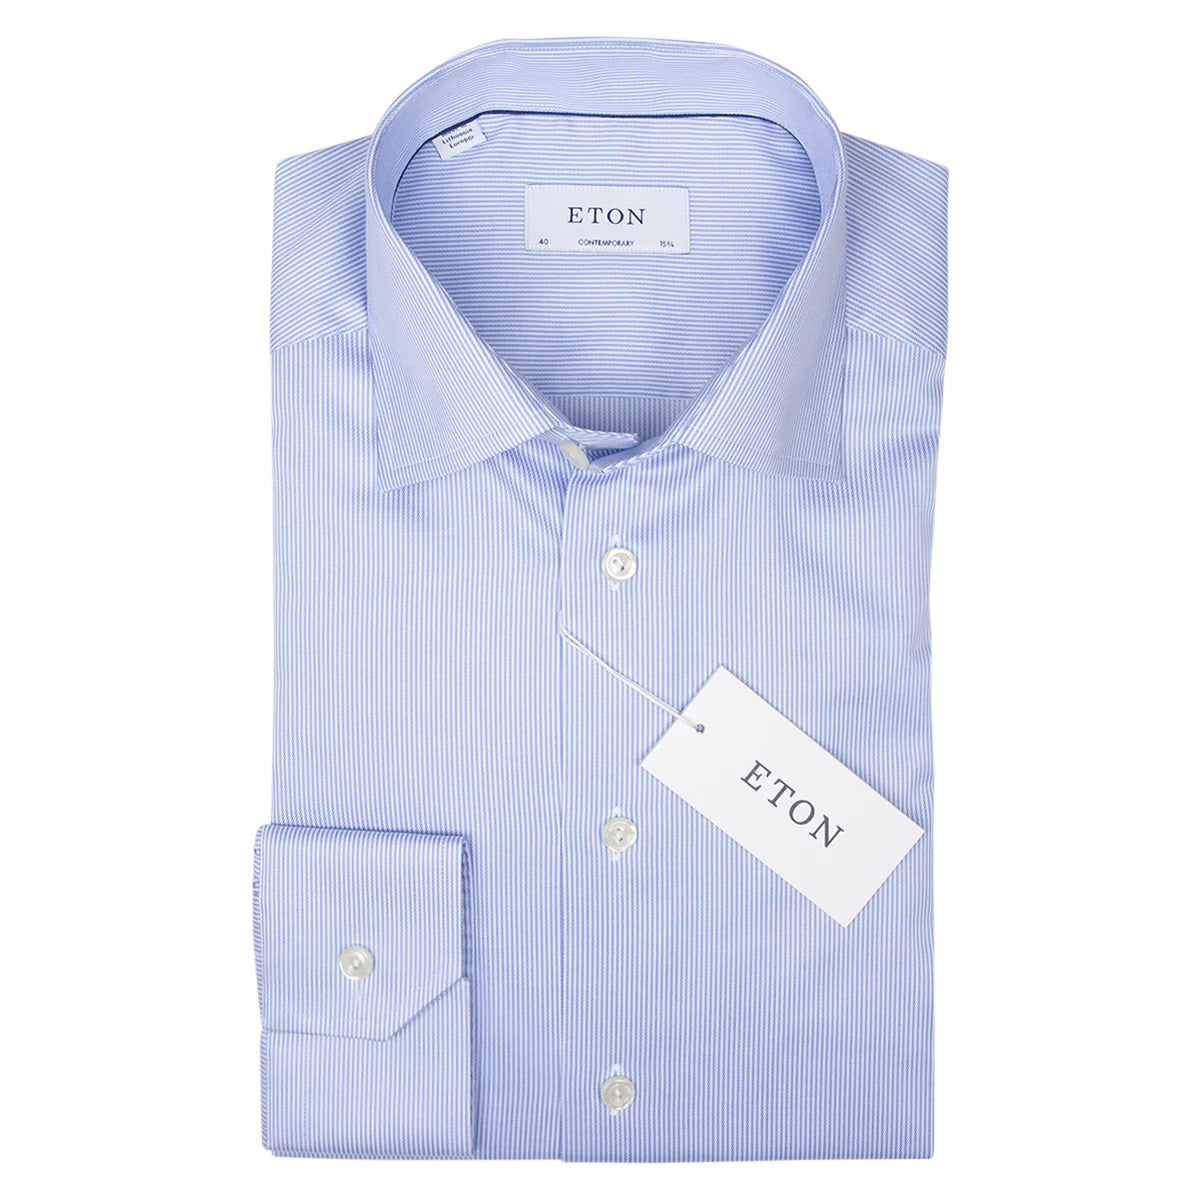 ETON Overhemd lichtblauw strepen | Contemporary